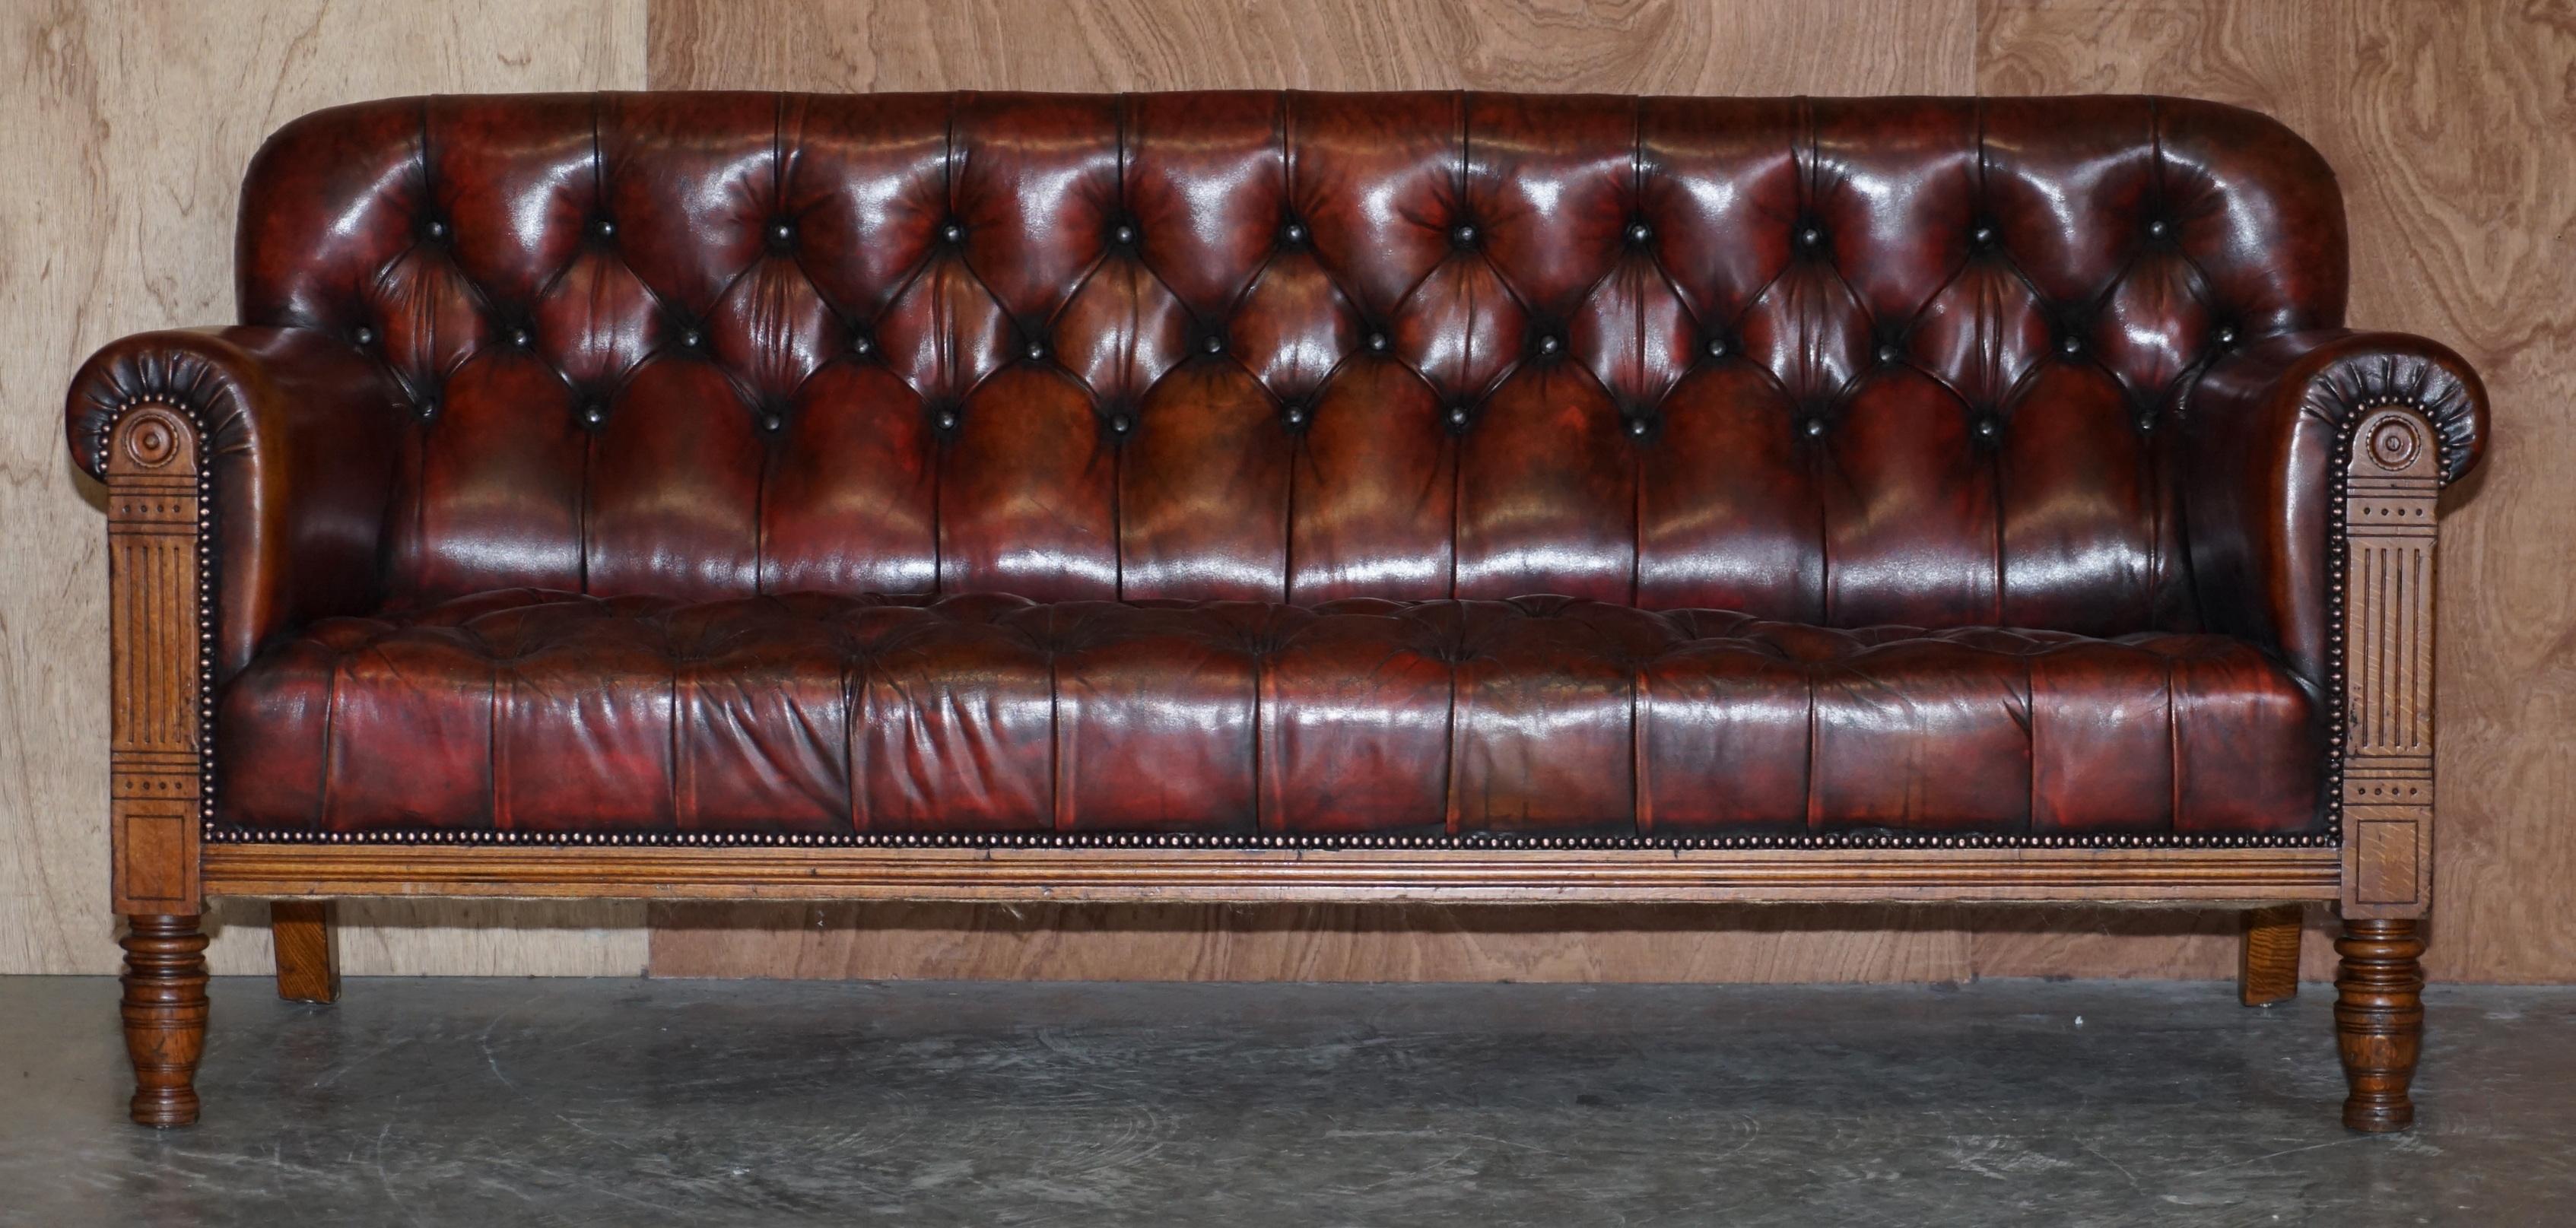 Nous avons le plaisir de proposer à la vente ce canapé Chesterfield Wylie & Lochhead de Glasgow d'environ 1860, entièrement restauré, en cuir brun teint à la main

Cette pièce est absolument sublime, réalisée par les génies que furent Wylie &